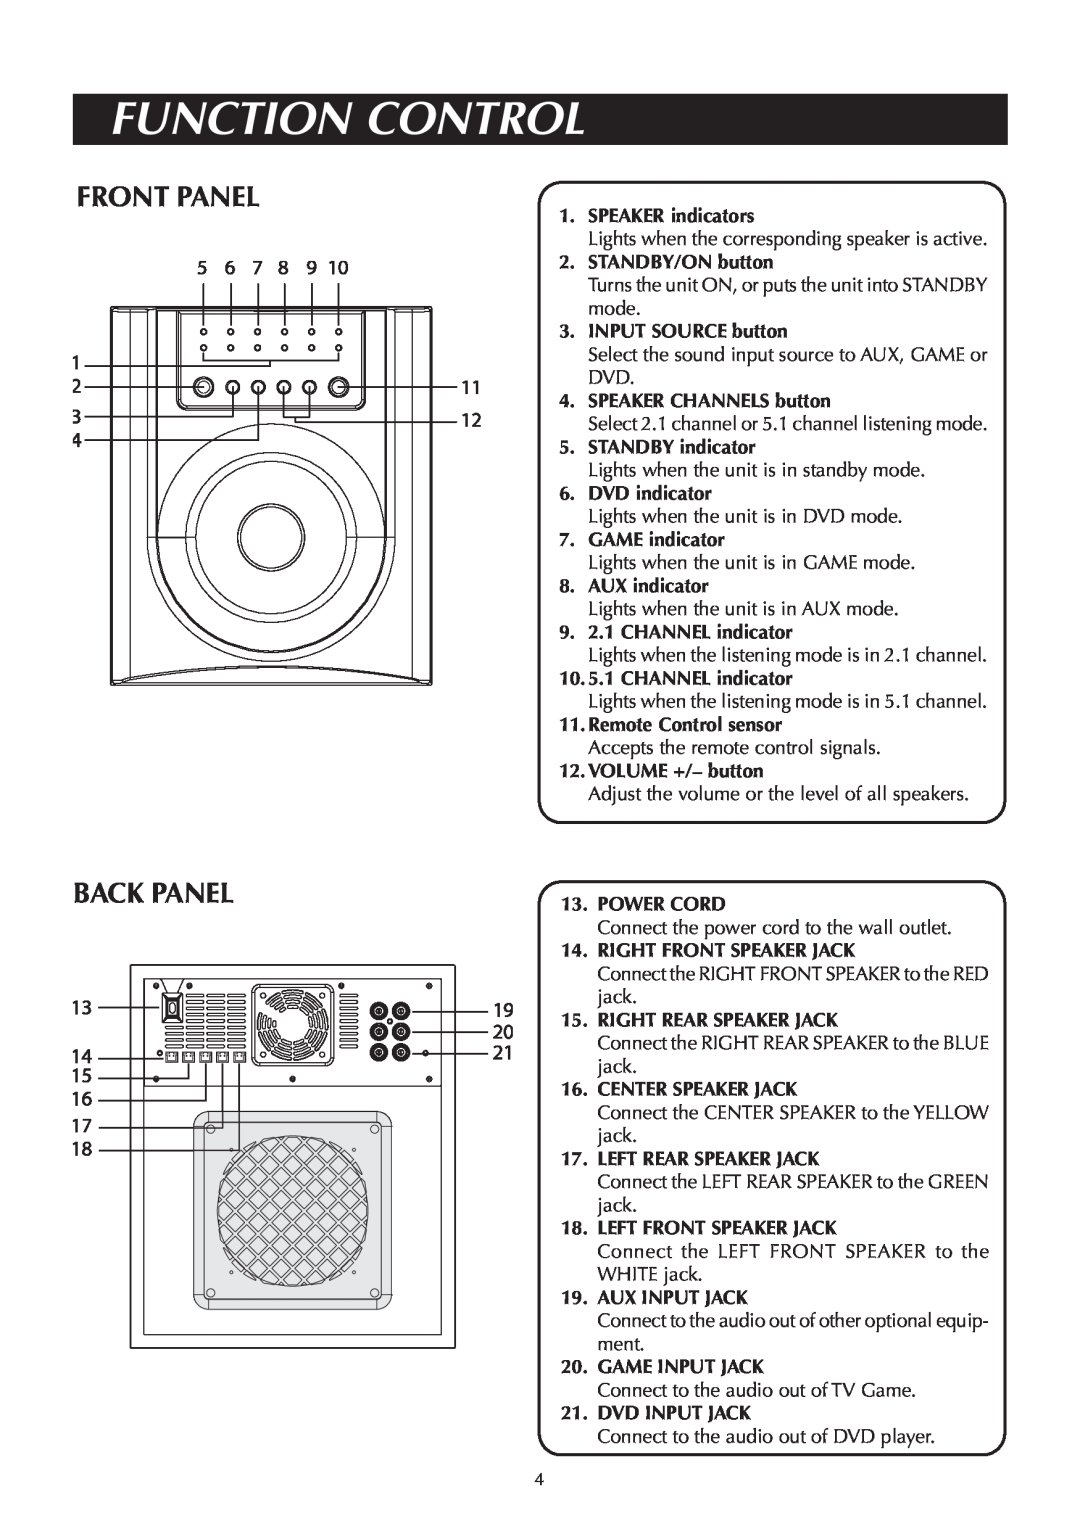 Venturer ASR150 instruction manual Function Control, Front Panel Back Panel 